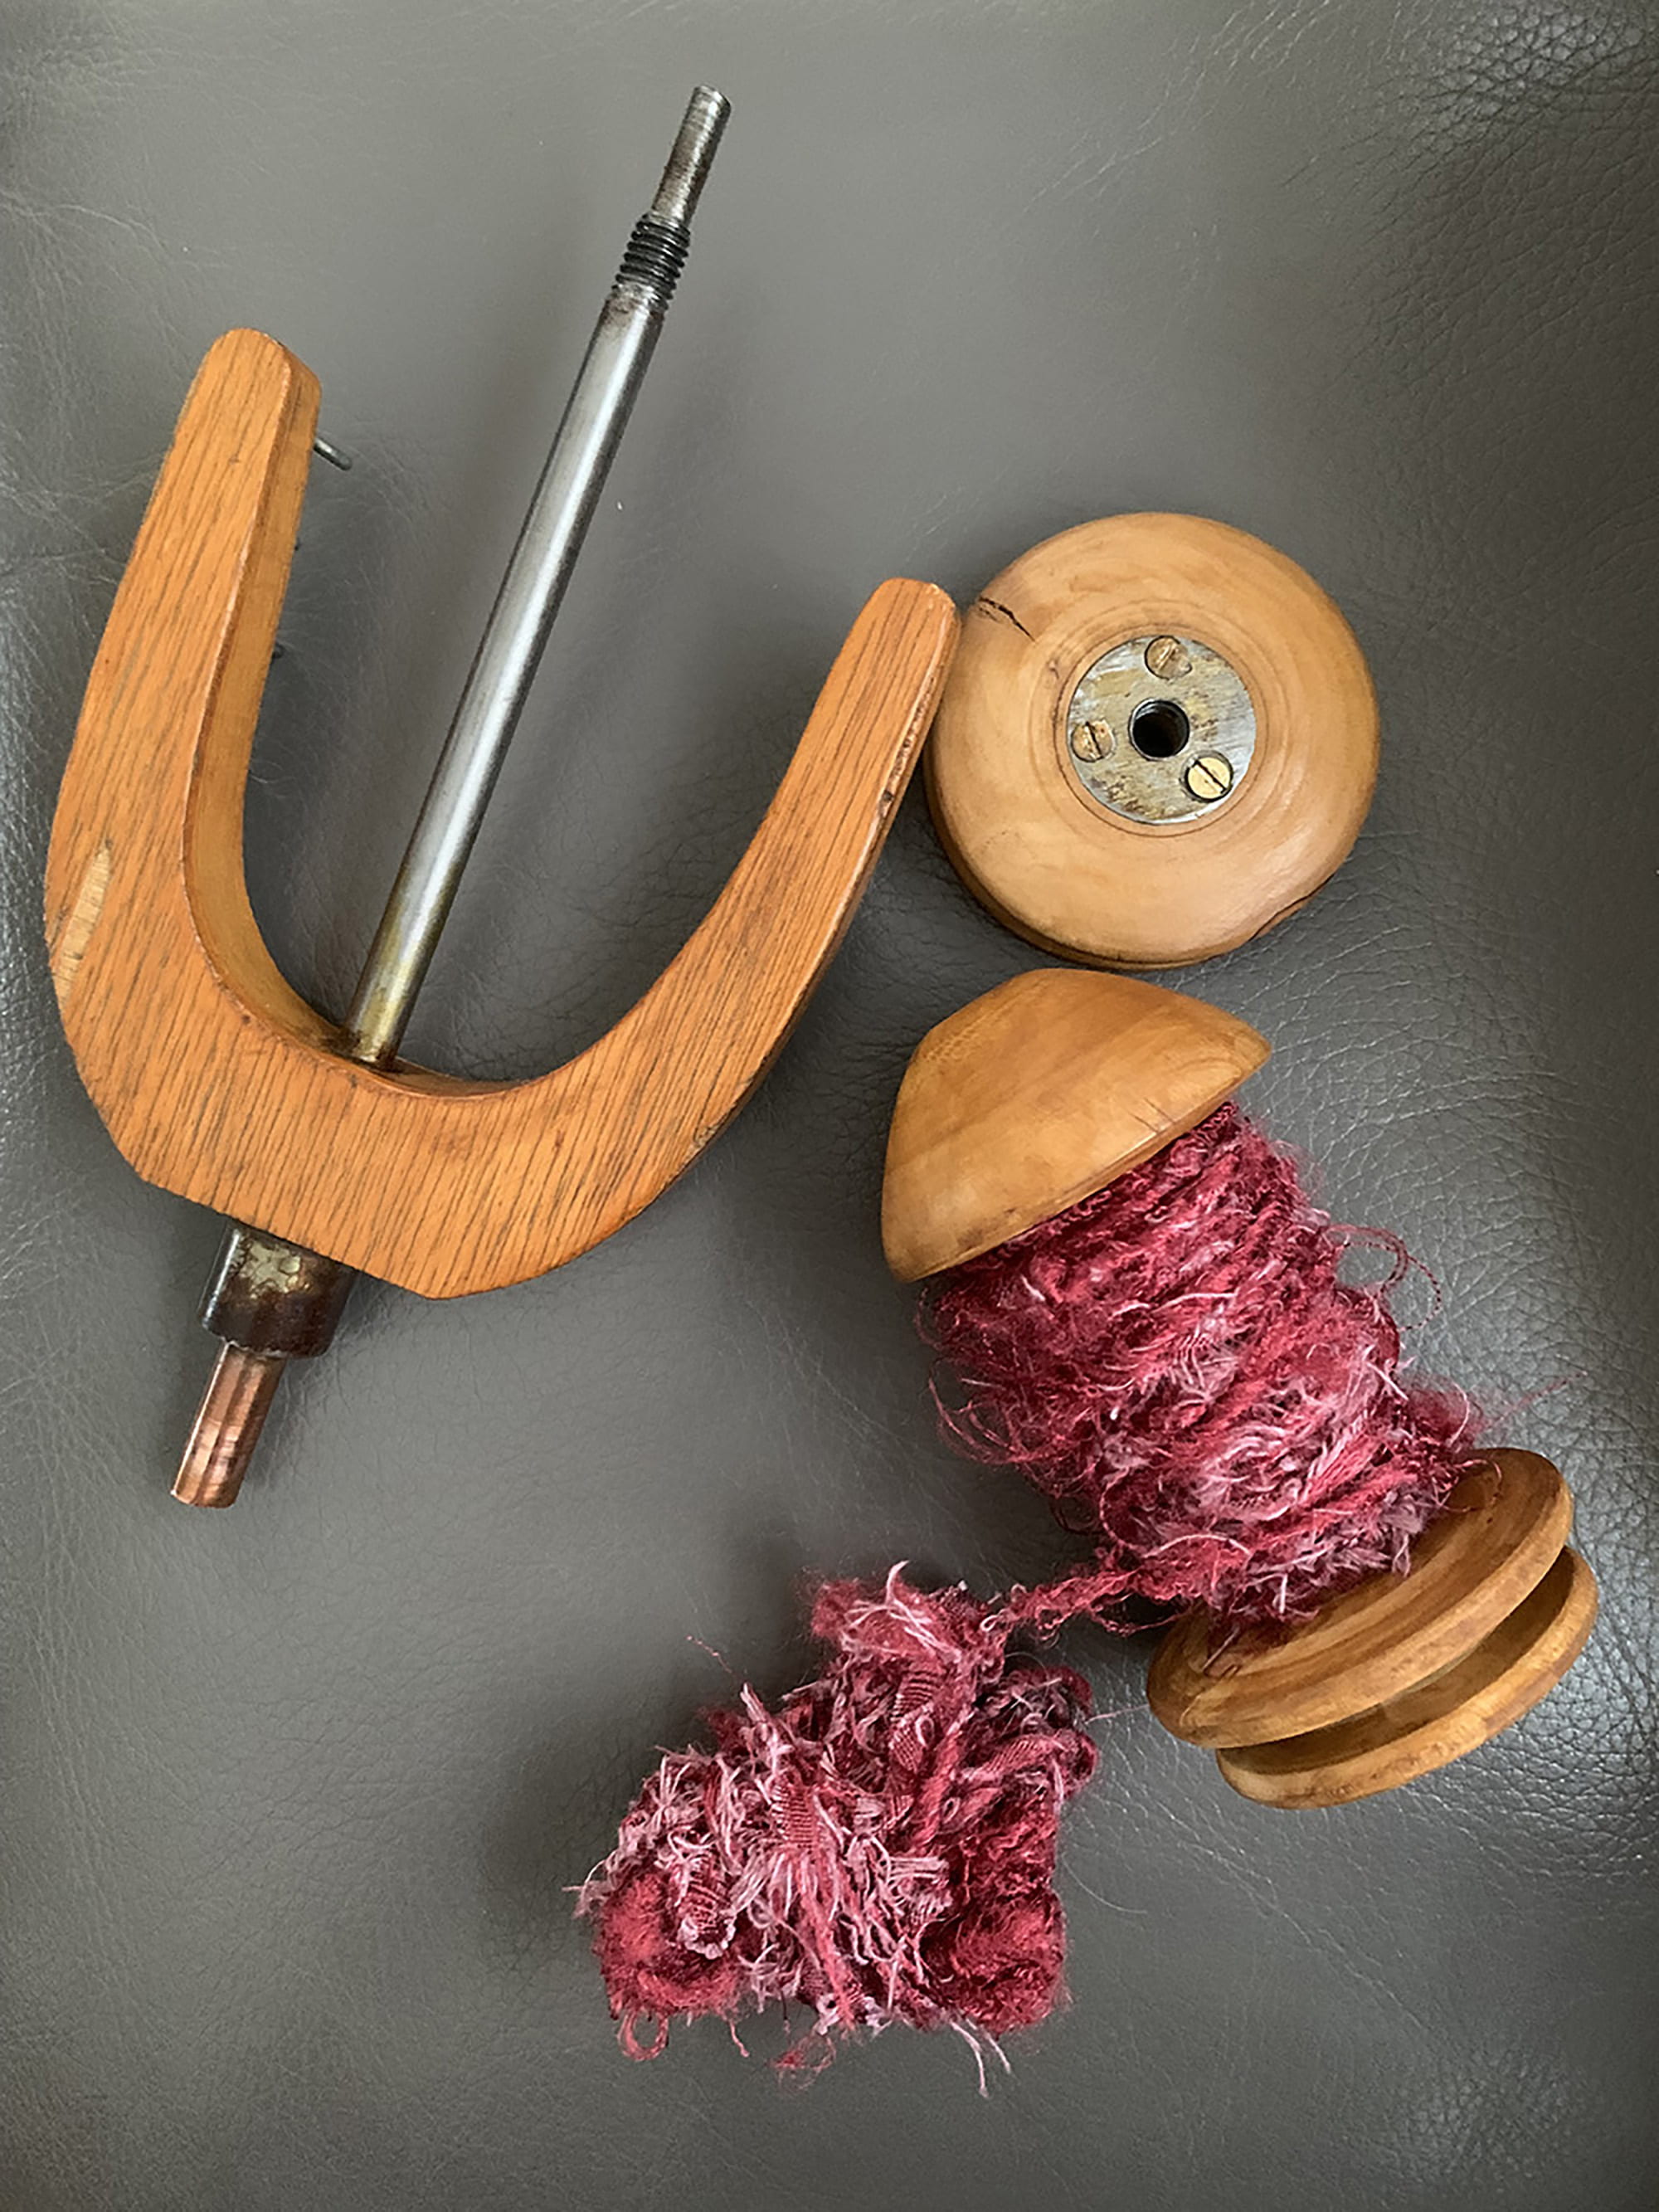 Spinning wheel spindle and bobbin containing spun rag yarn.